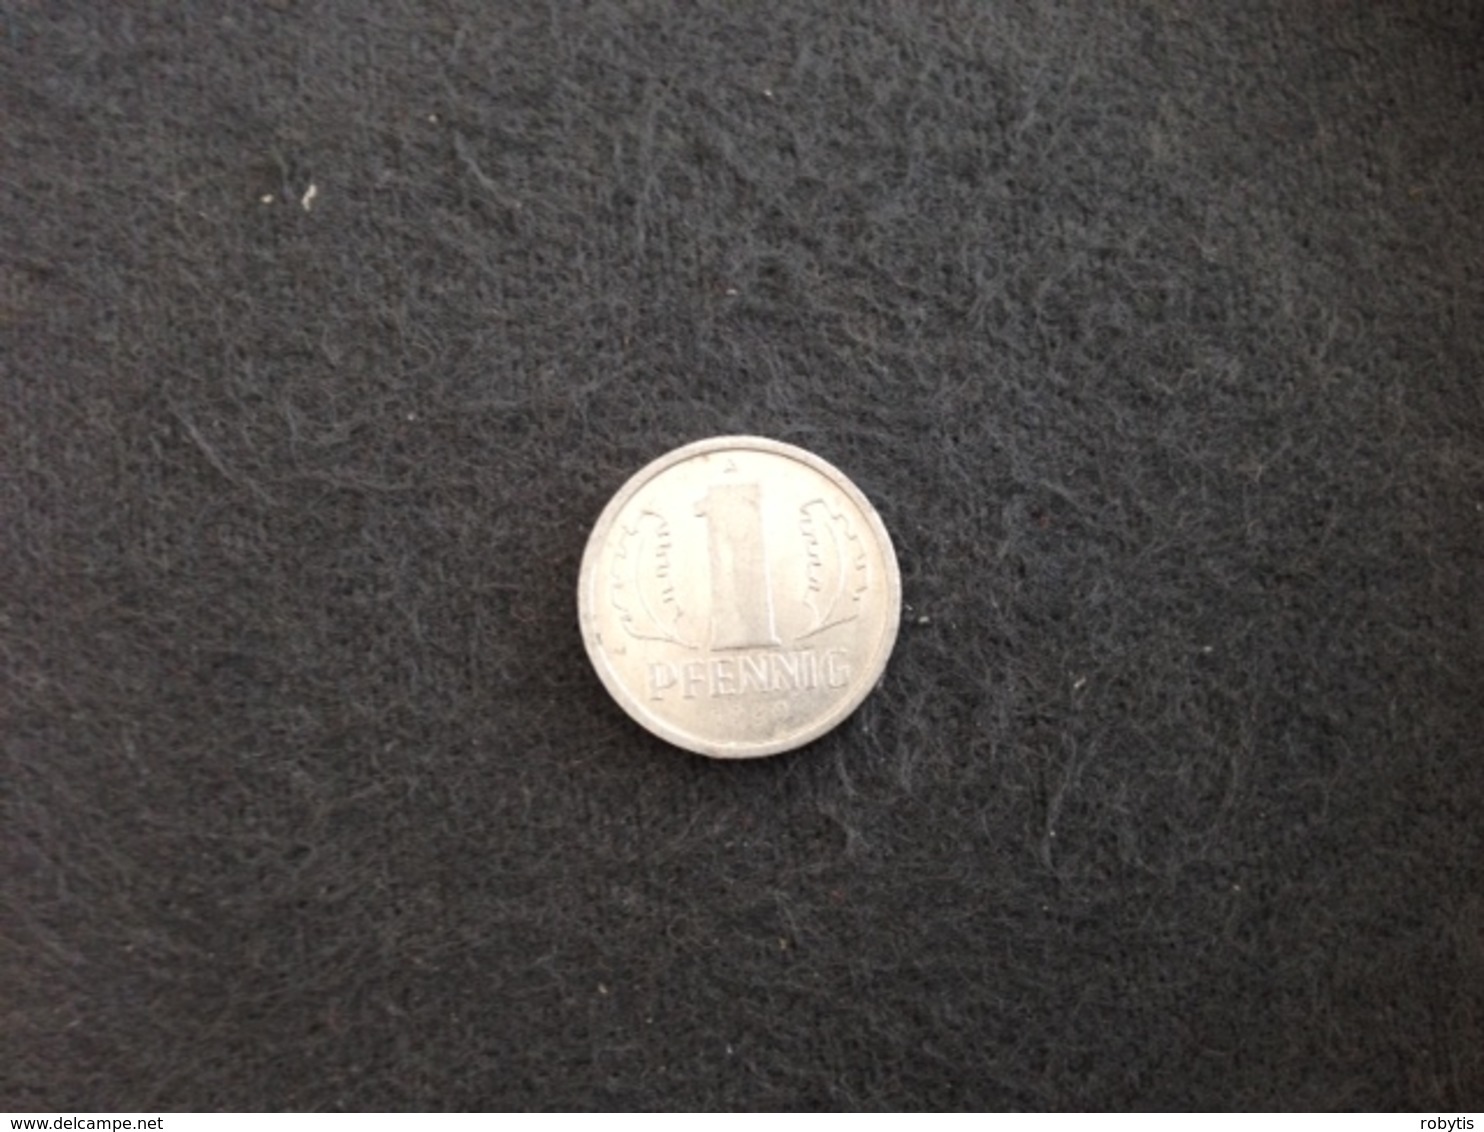 1 Pfennig 1989 A - Germany - GDR - 1 Pfennig